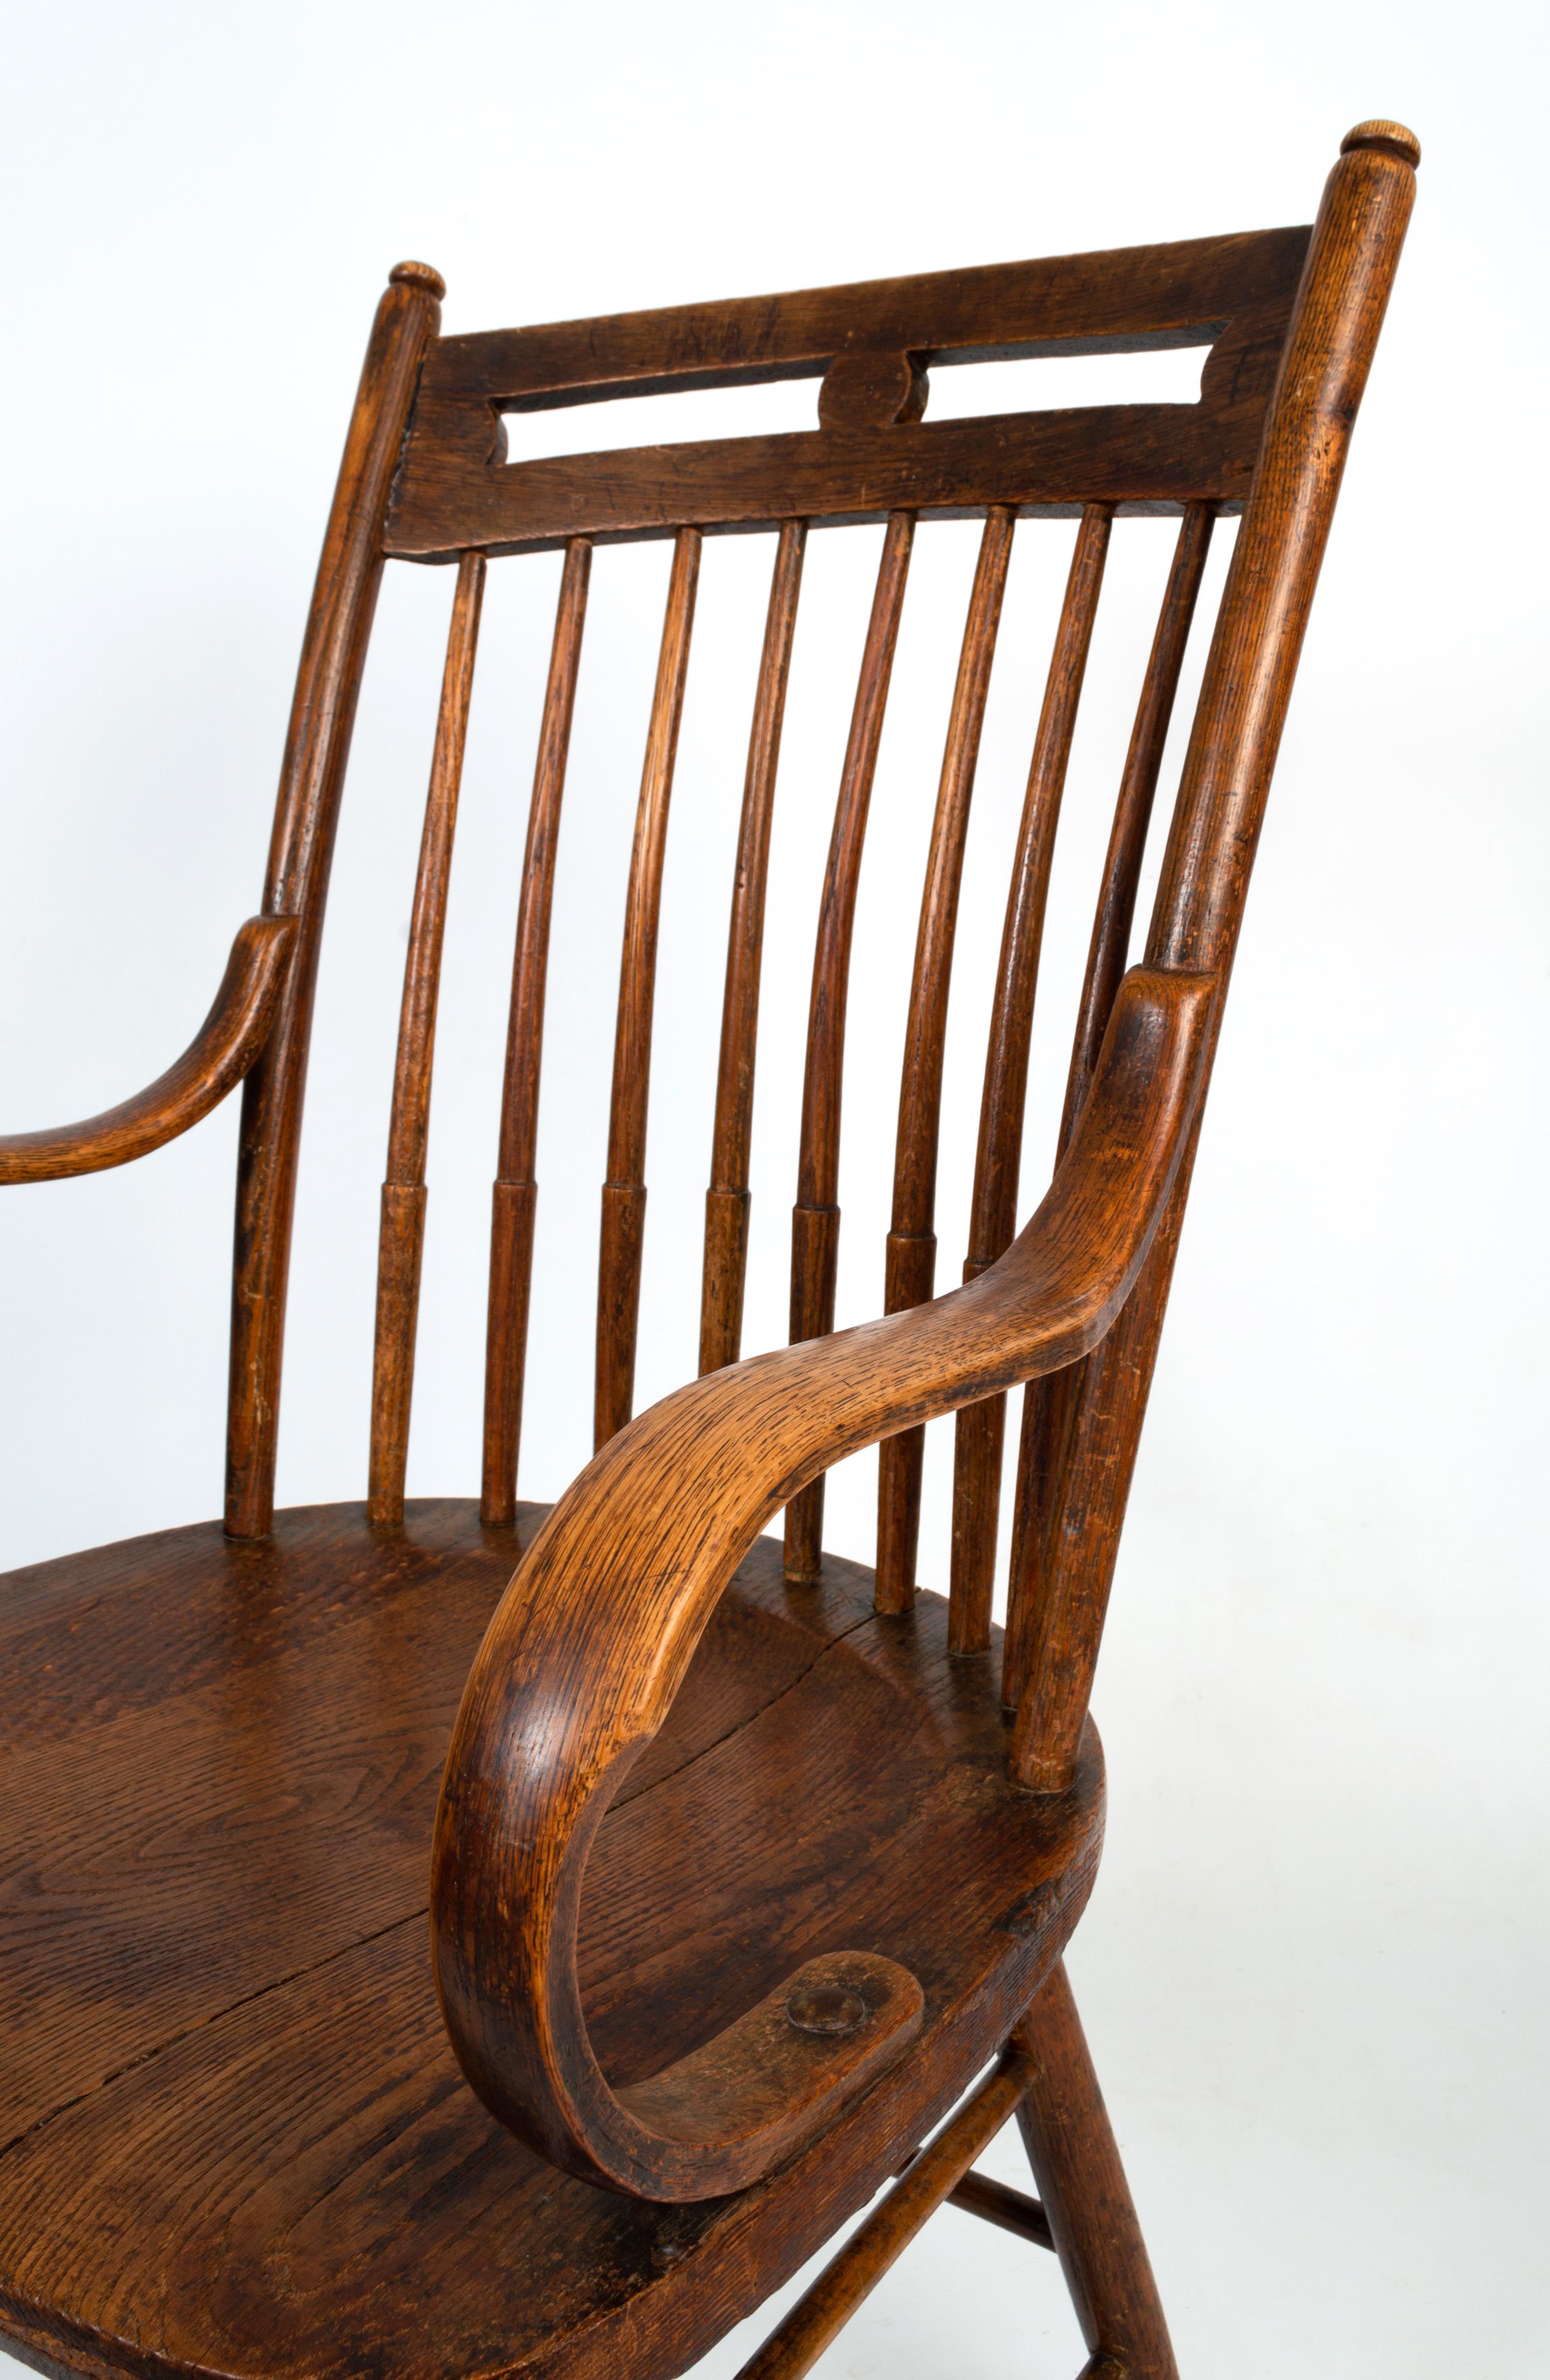 Ancienne chaise Windsor à dossier en bâton, de style Arts & Crafts anglais, 
Heals Of London
Construction en chêne
C.1900
Très bon état, en rapport avec l'âge.